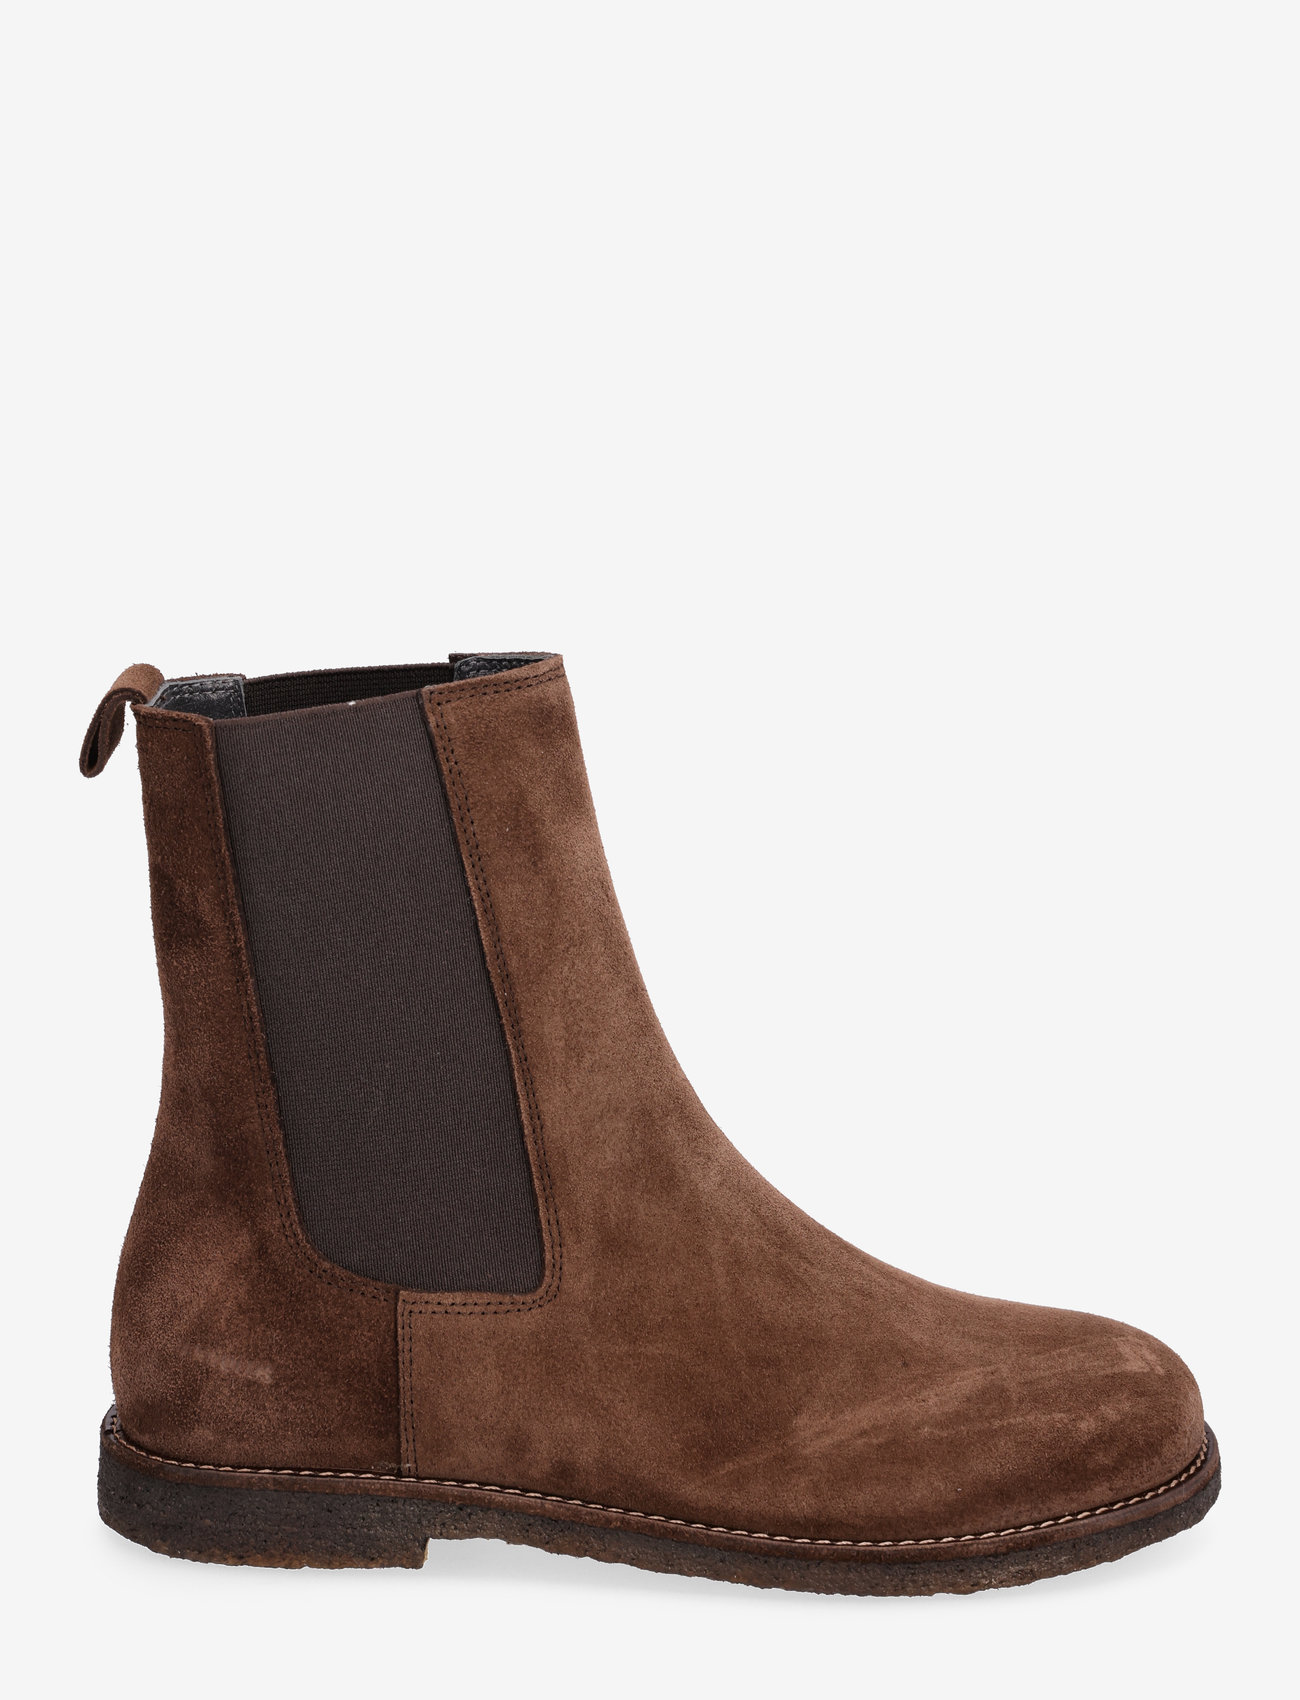 ANGULUS - Boots - flat - chelsea-saapad - 1718/002 brown/brown - 1